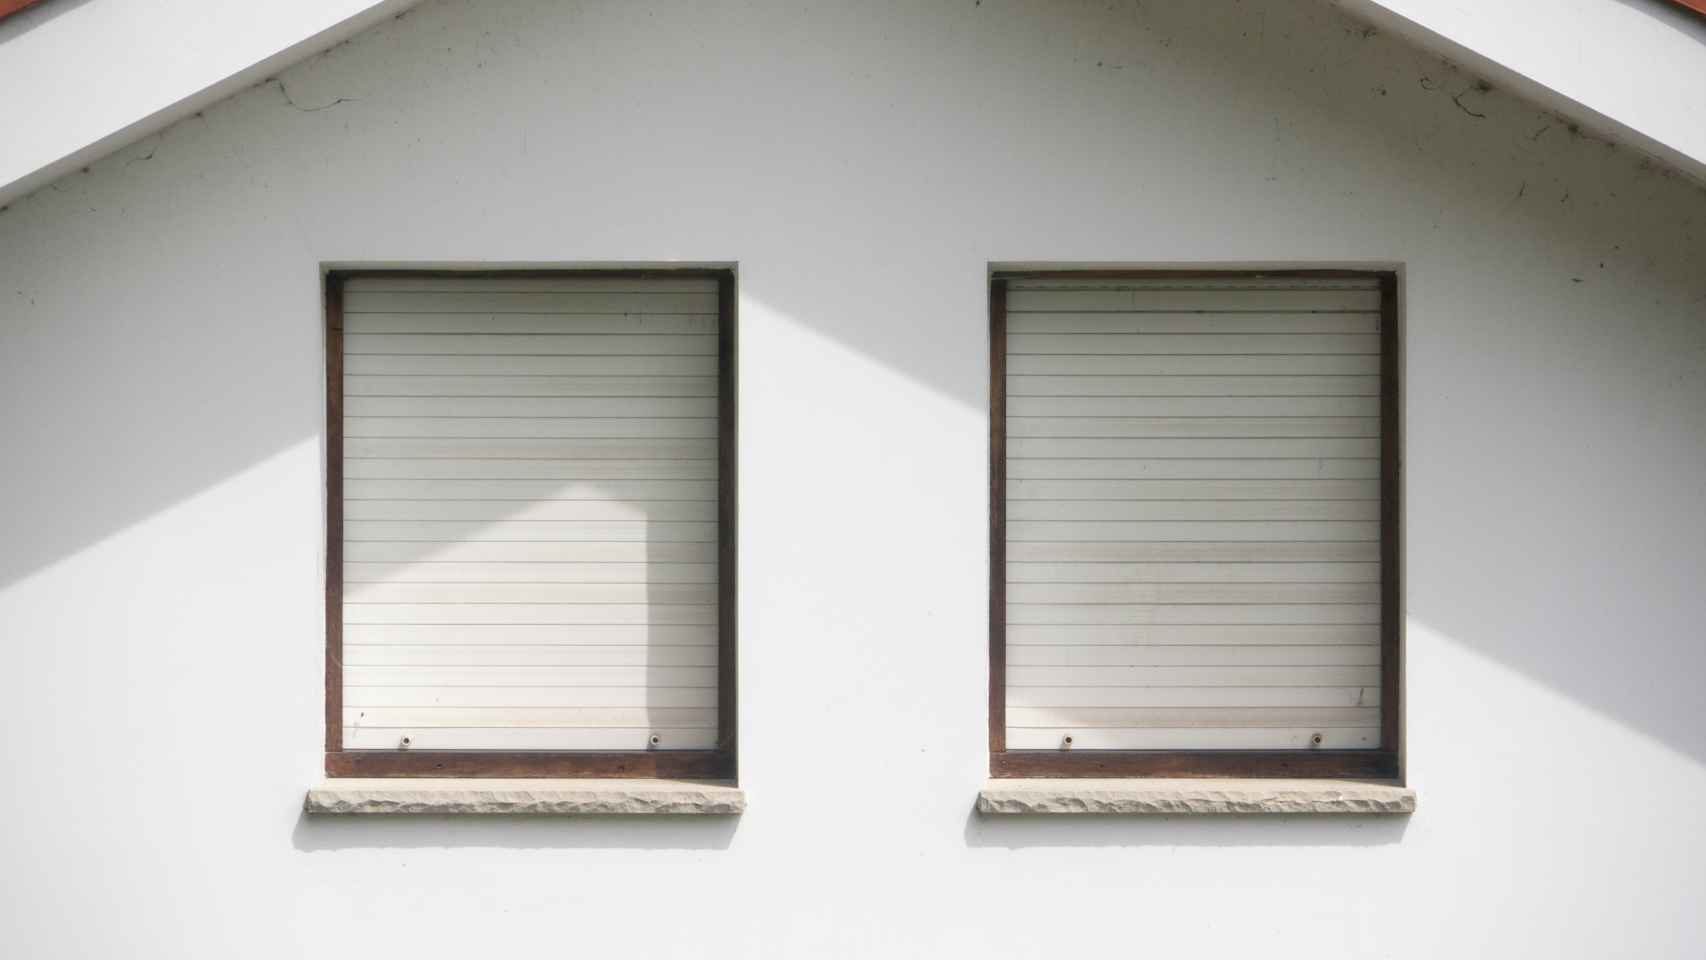 Dos ventanas con persianas bajadas de color blanco. Foto: iStock.